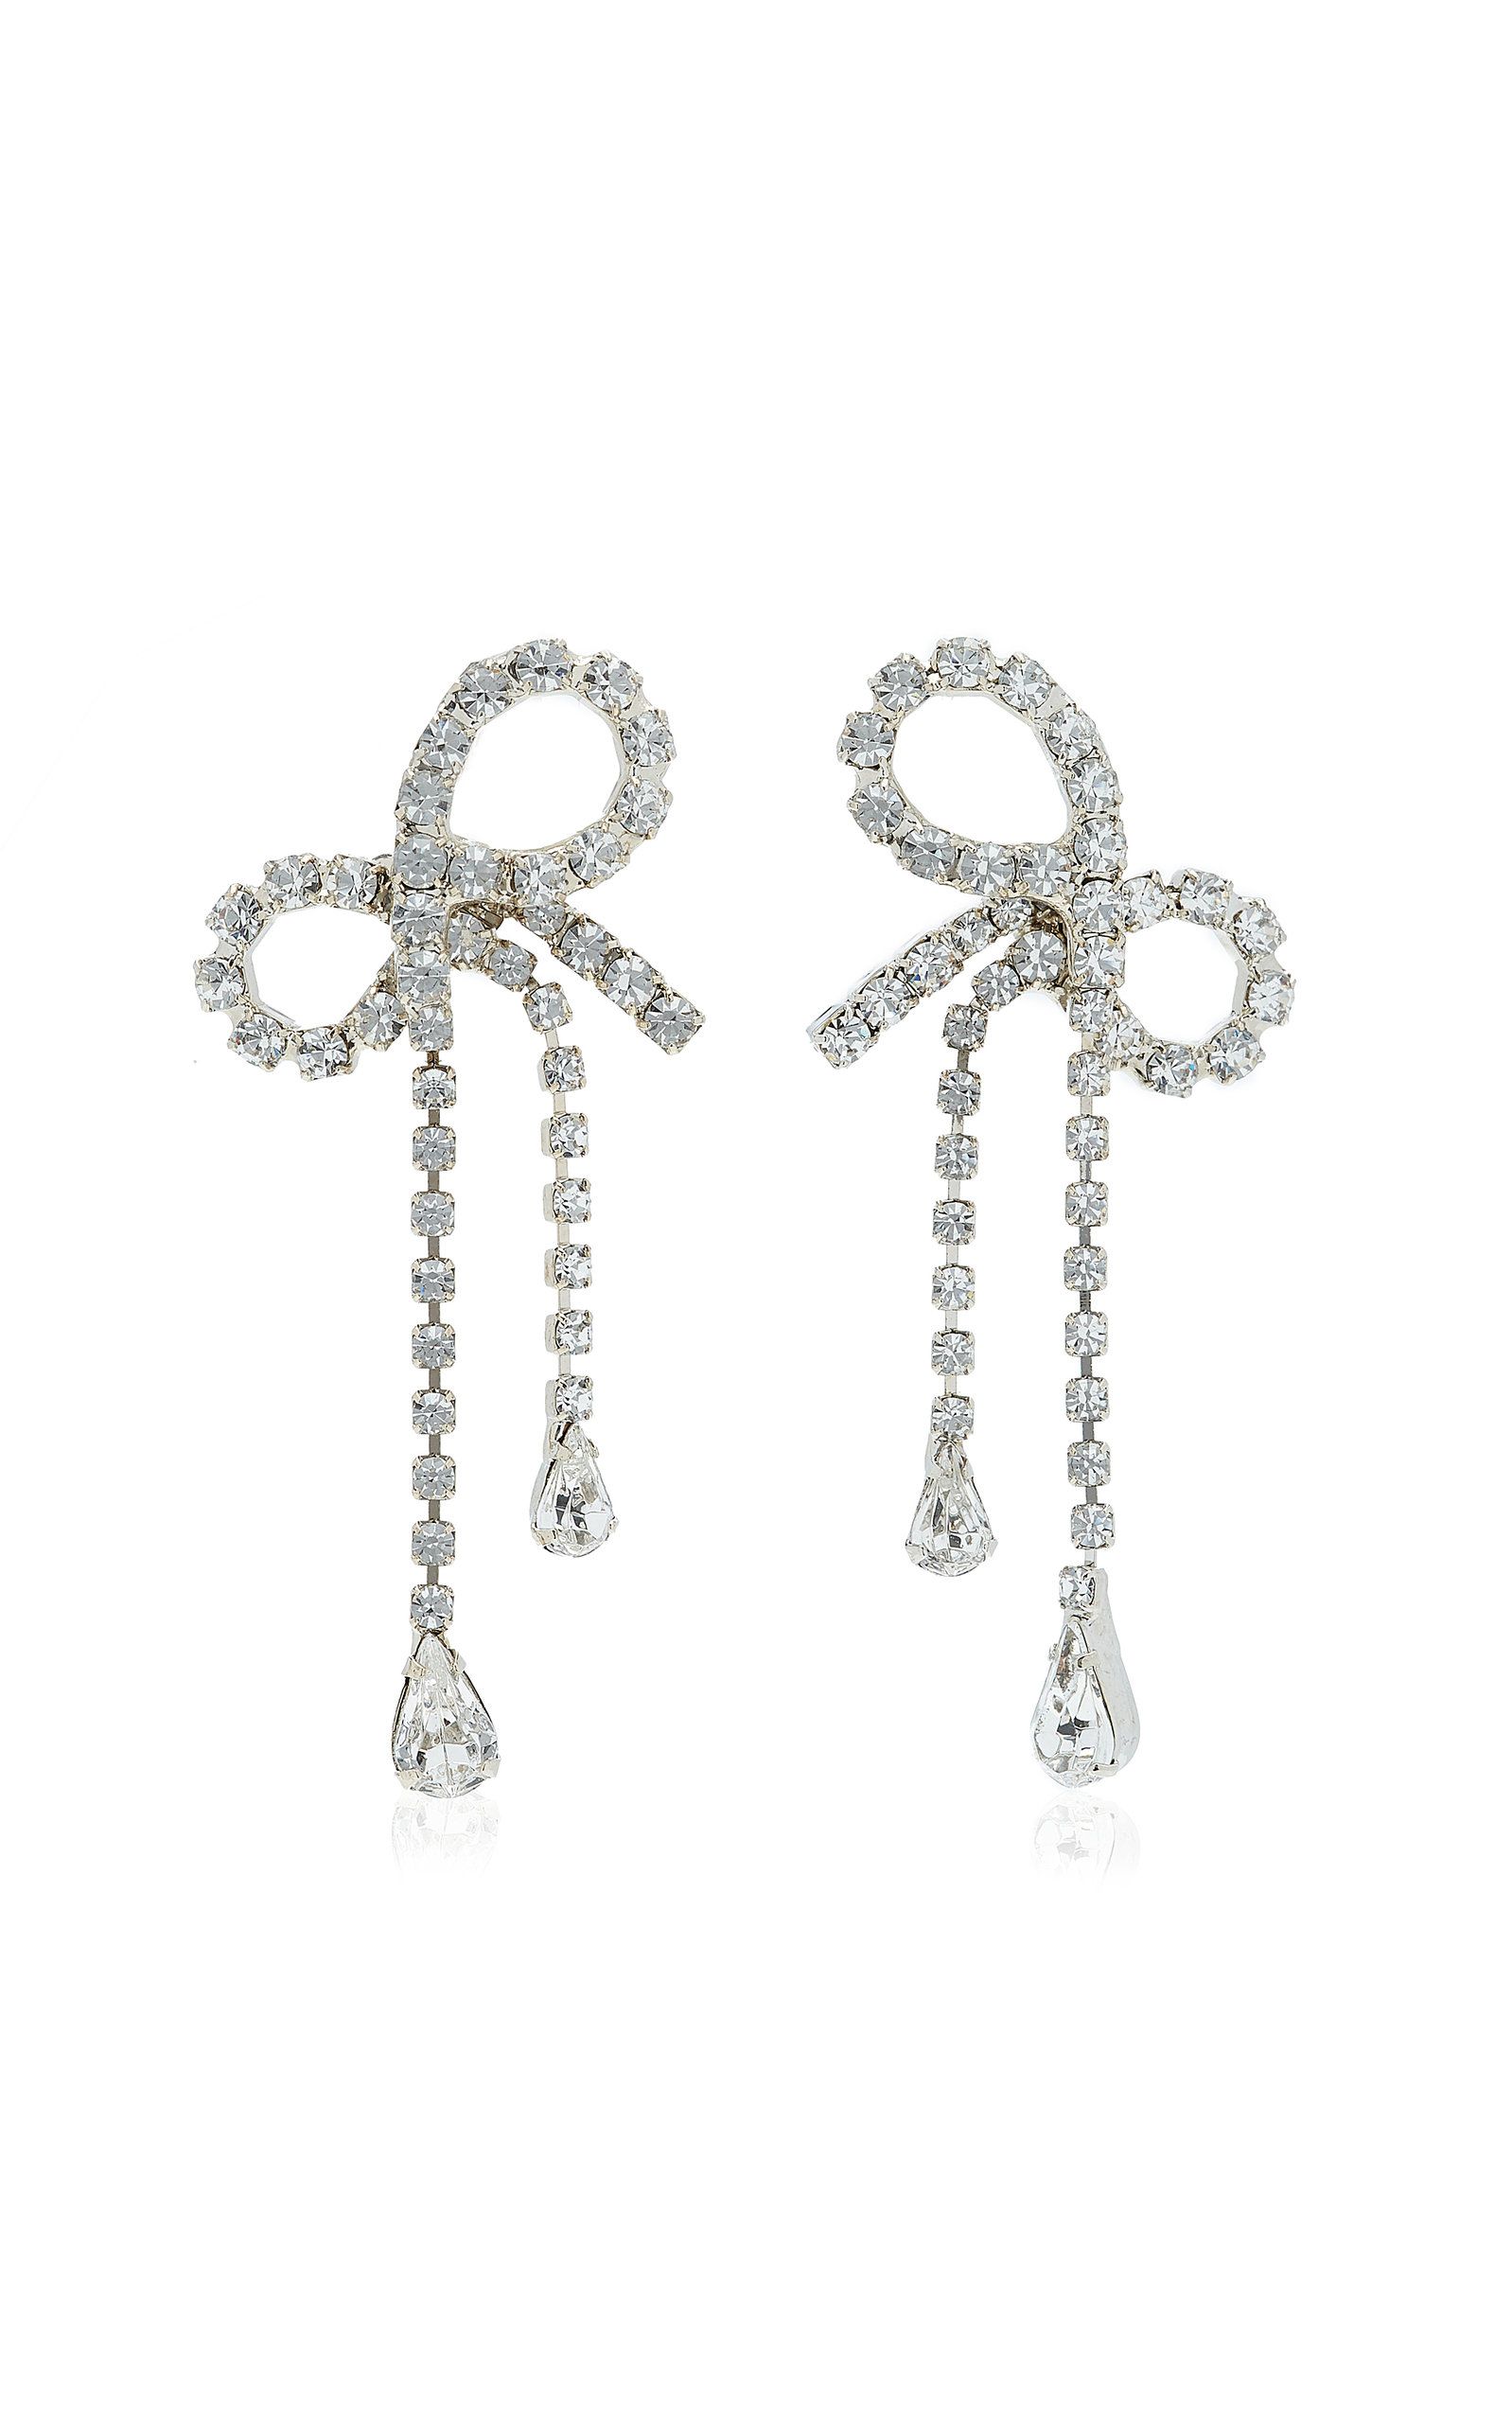 Jennifer Behr - Women's Mirabelle Crystal-Embellished Bow Earrings - Silver - OS - Moda Operandi - G | Moda Operandi (Global)